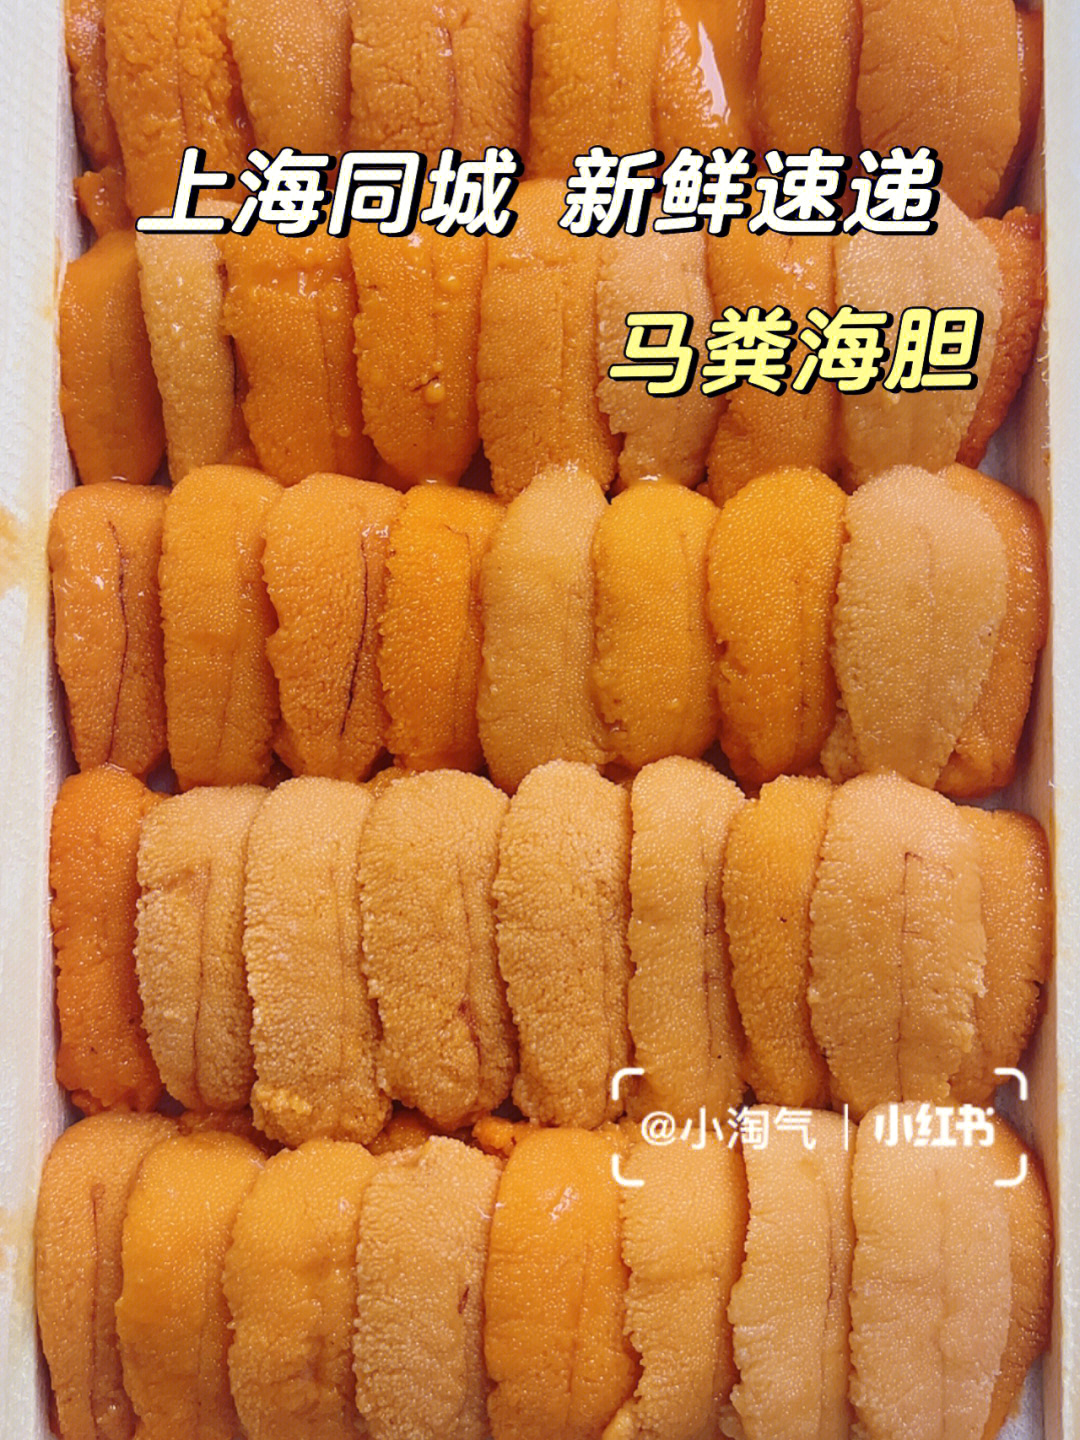 上海外卖马粪海胆季太鲜甜了快来品尝吧